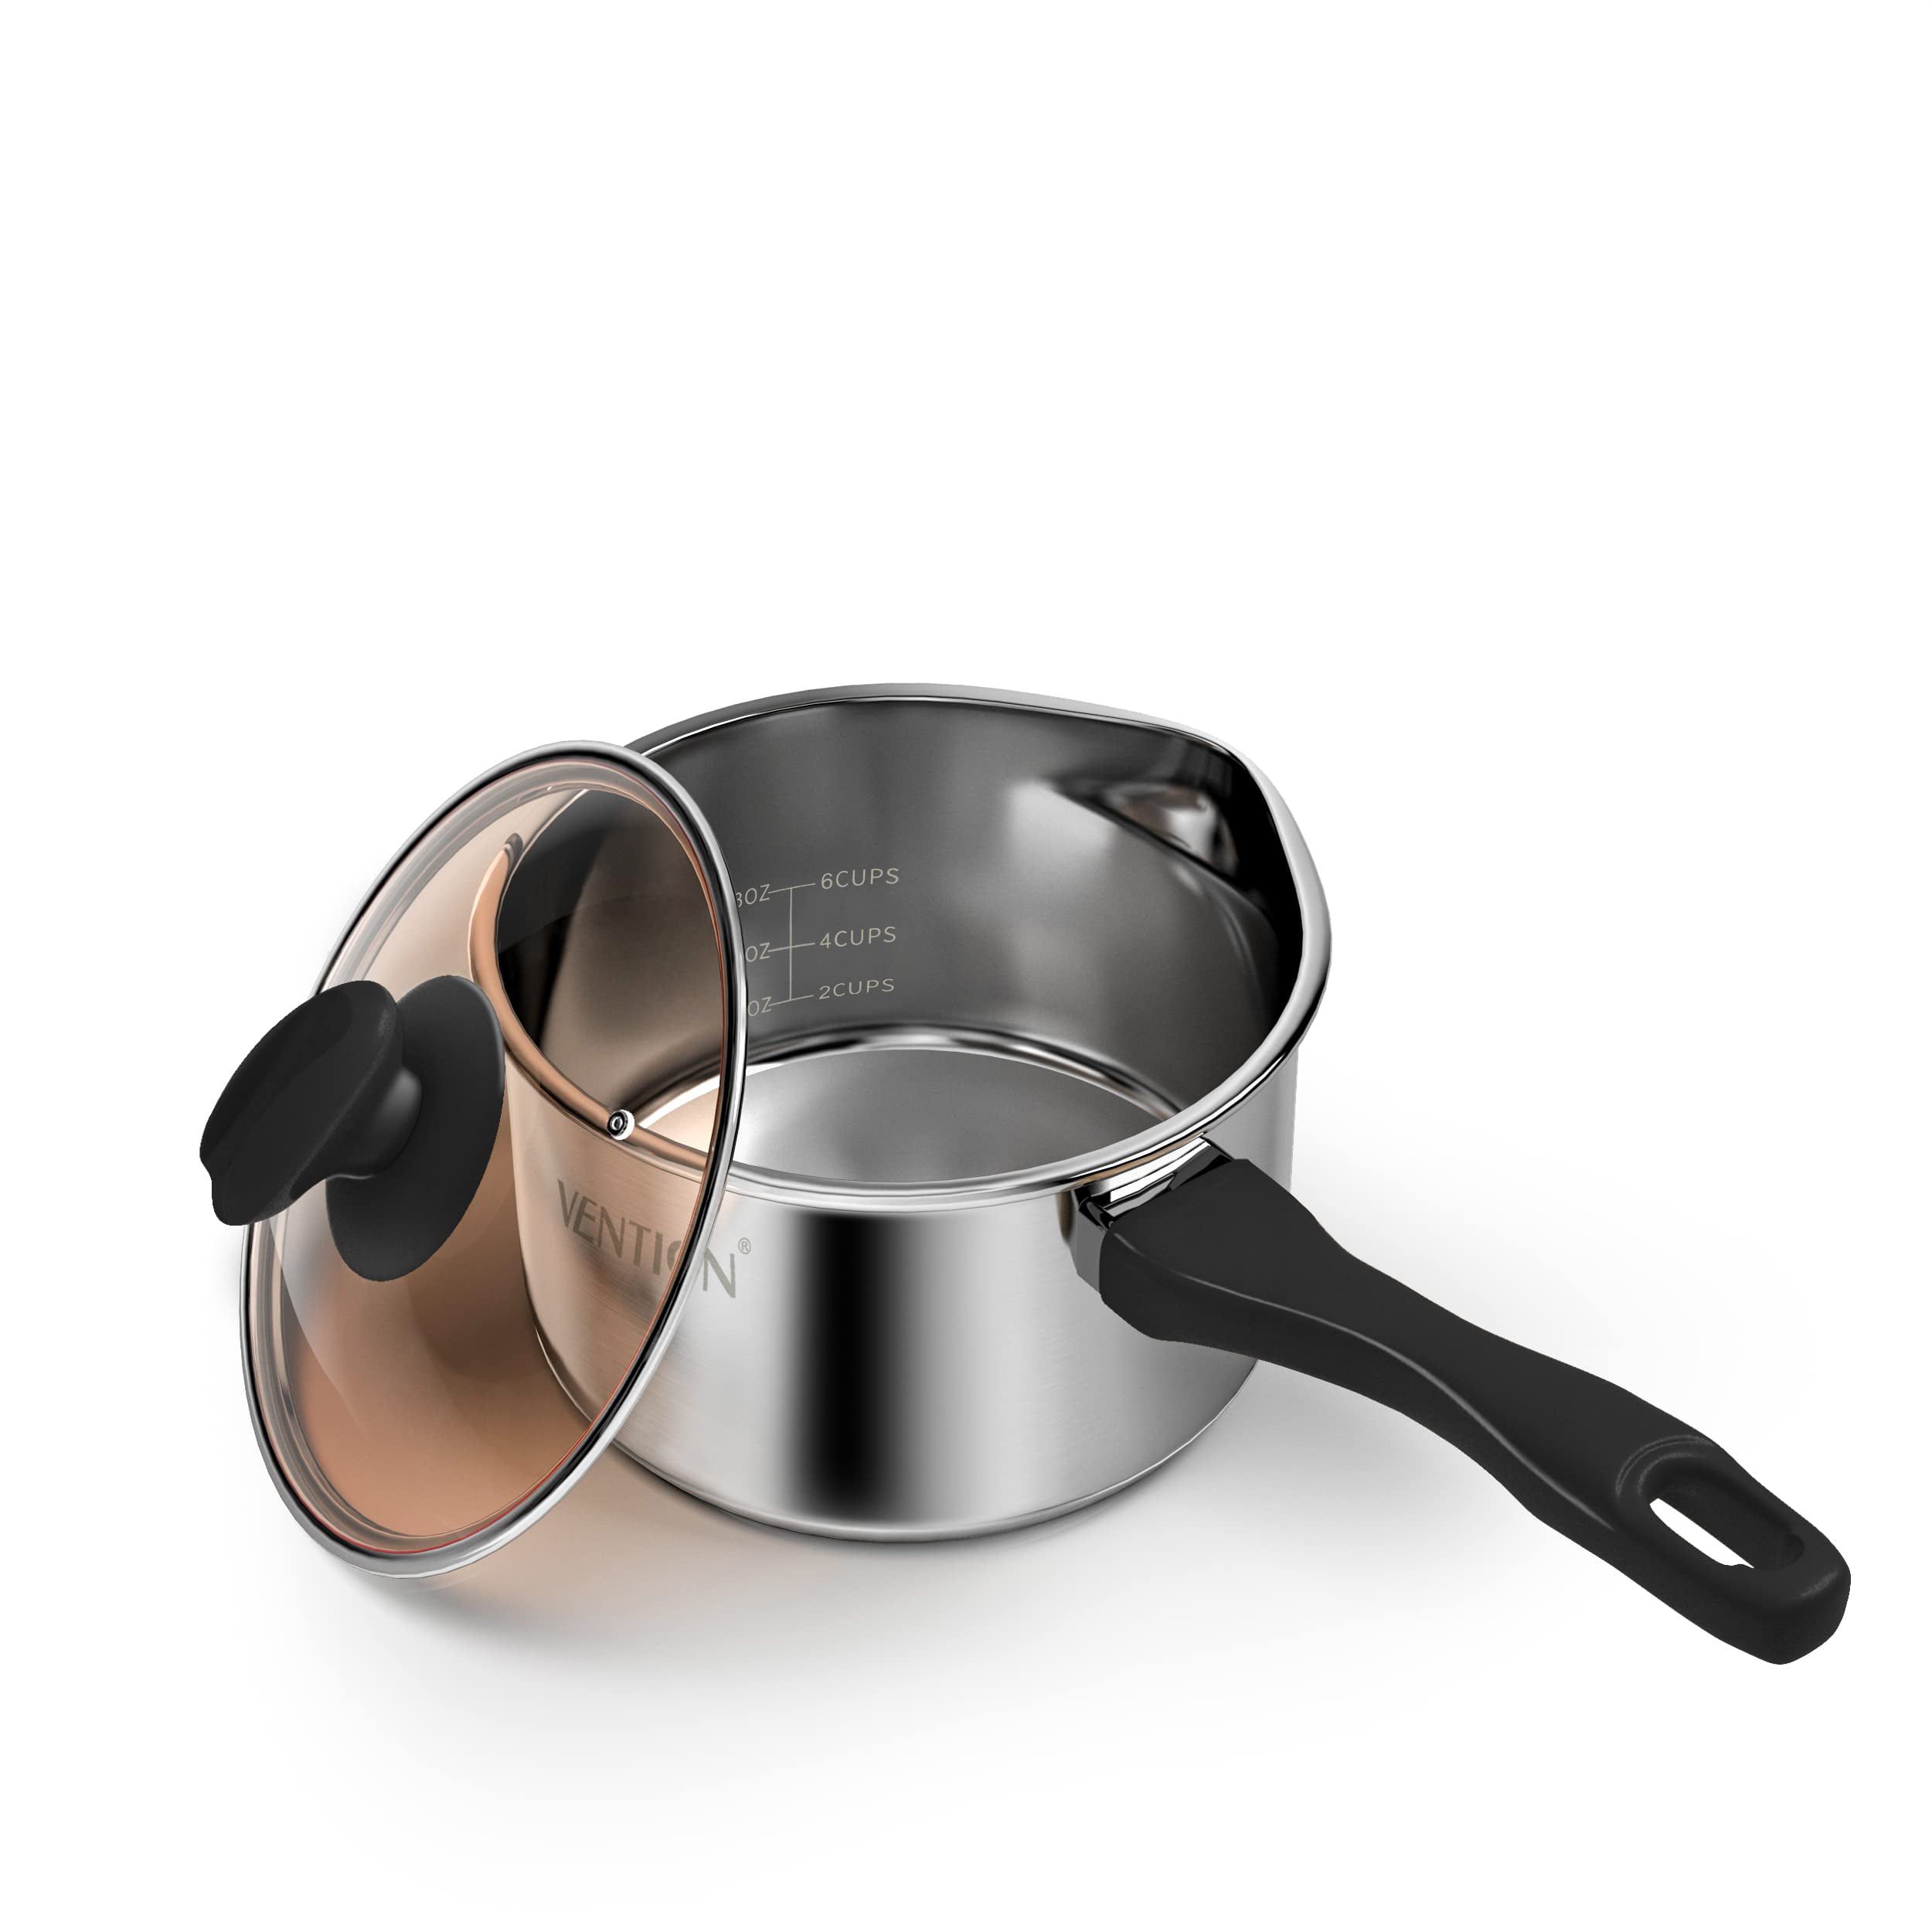 2 Quart Saucepan – WaterlessCookware